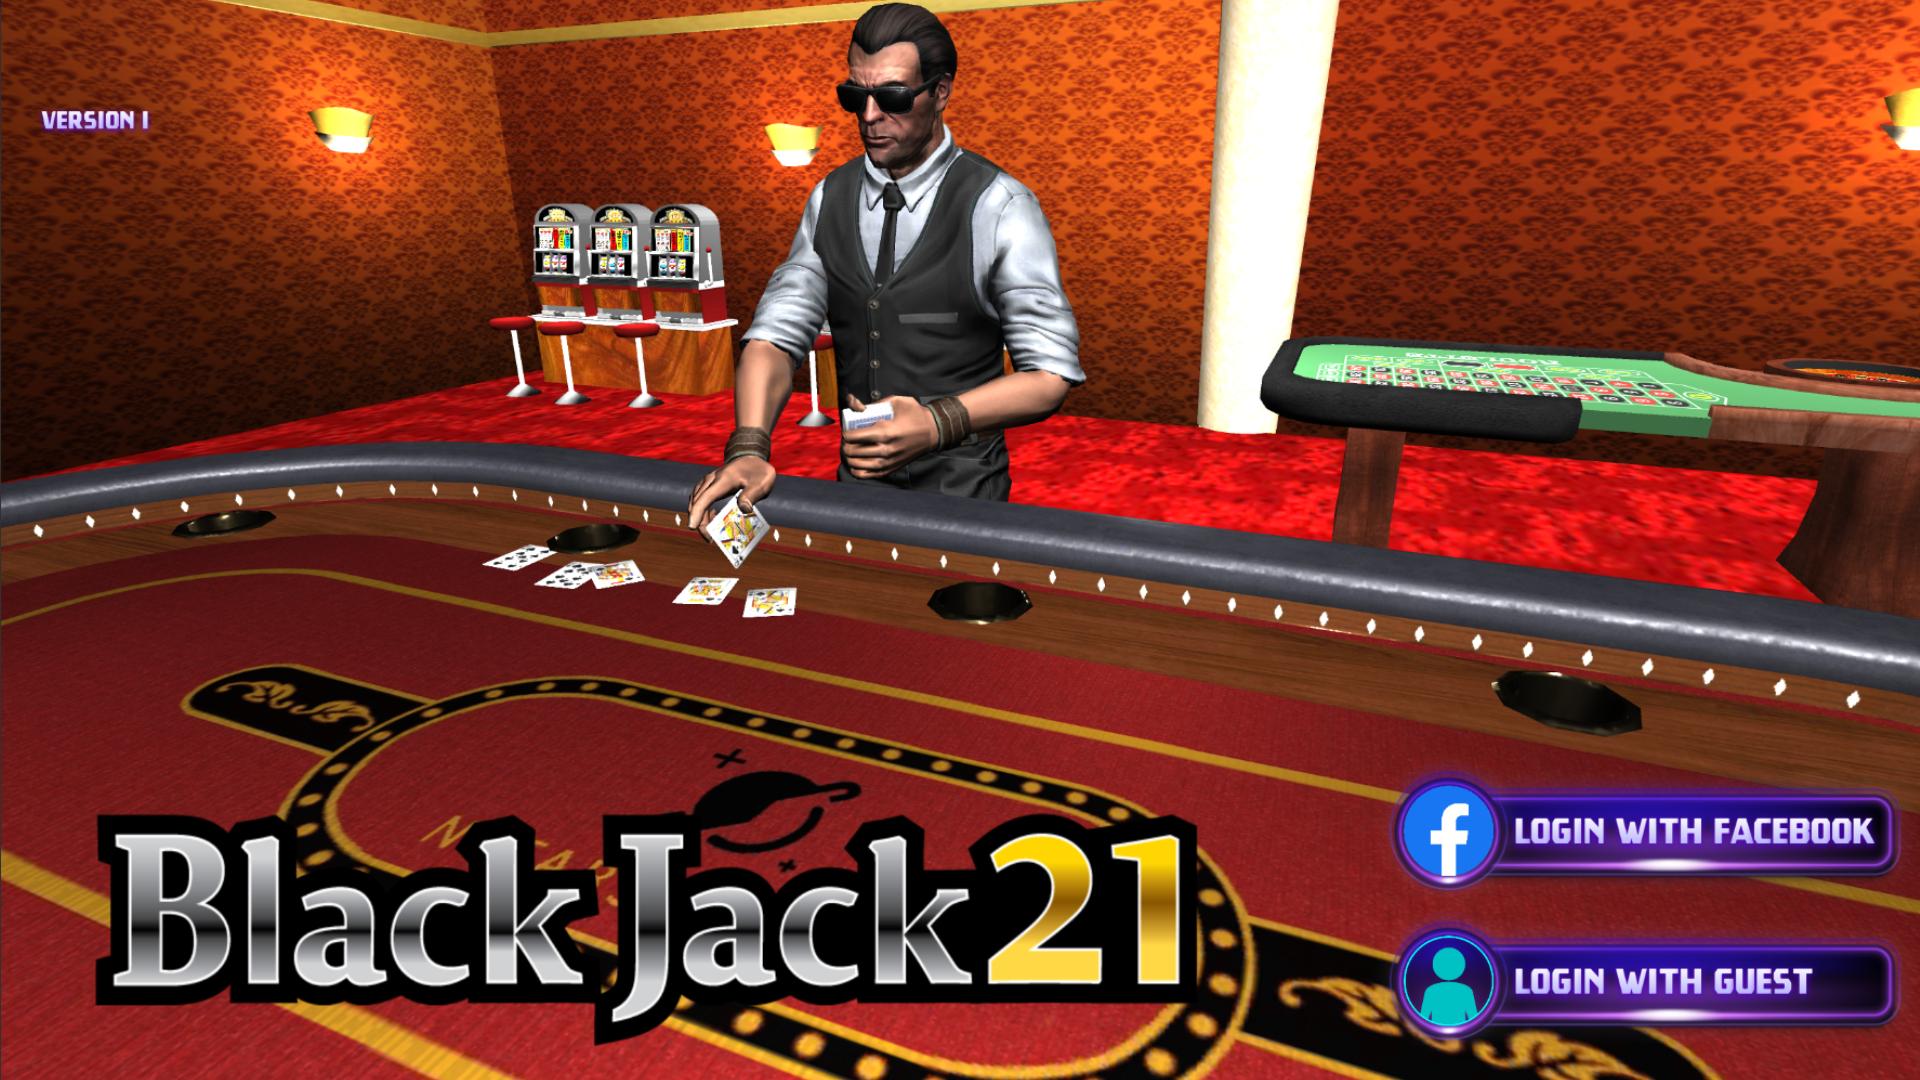 Pocket Blackjack 21 game.